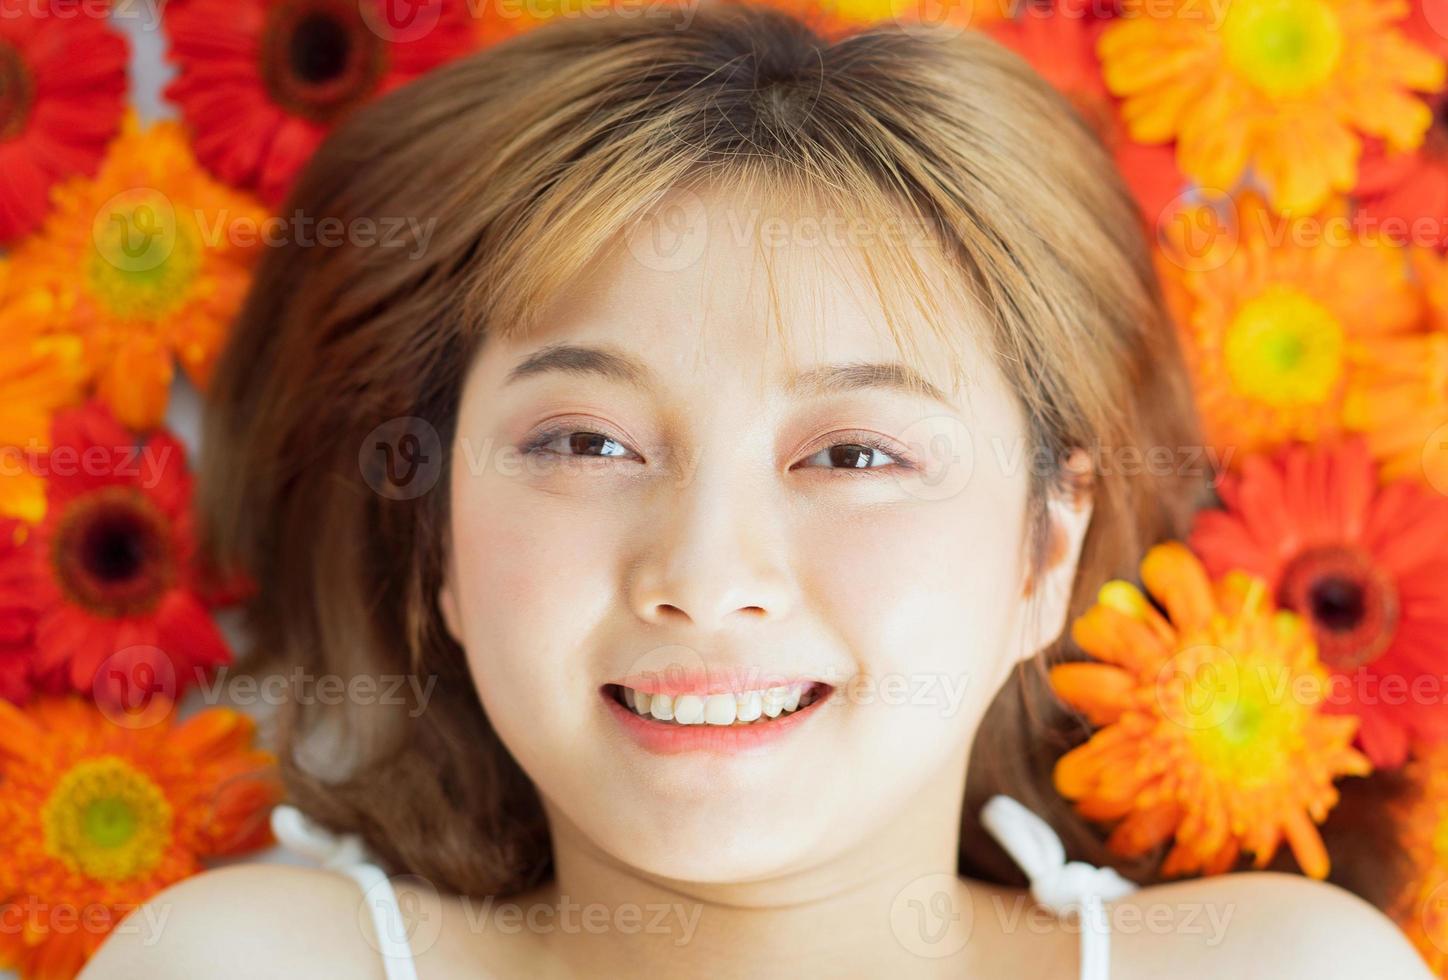 jovem deitada em uma flor com uma expressão feliz foto